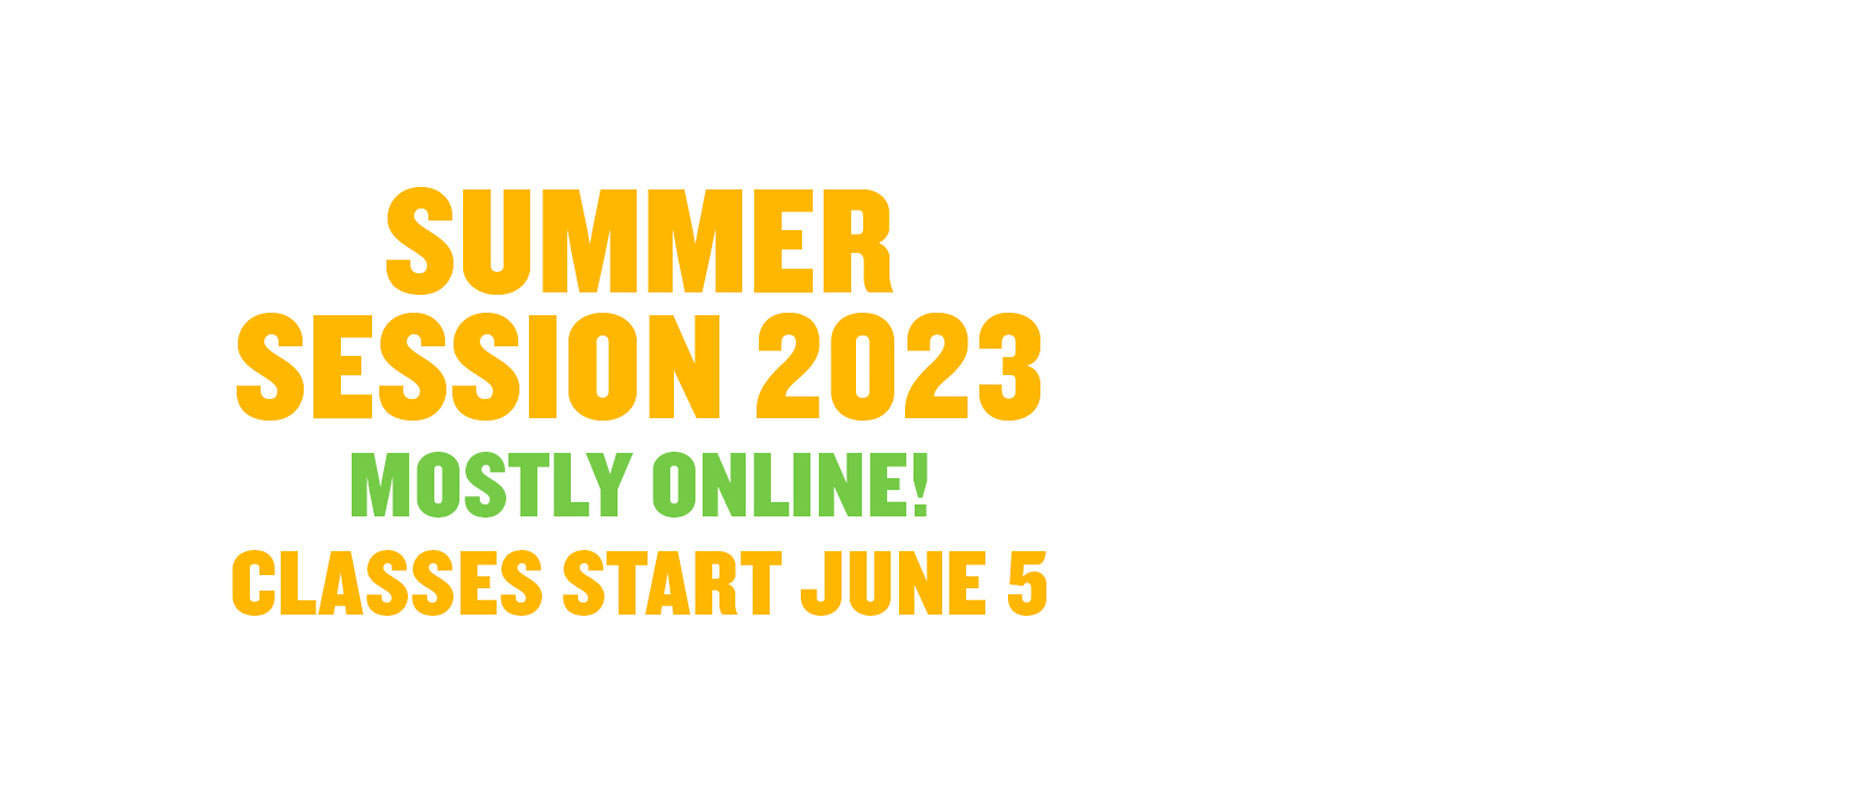 Summer Session 2023 Starts June 5